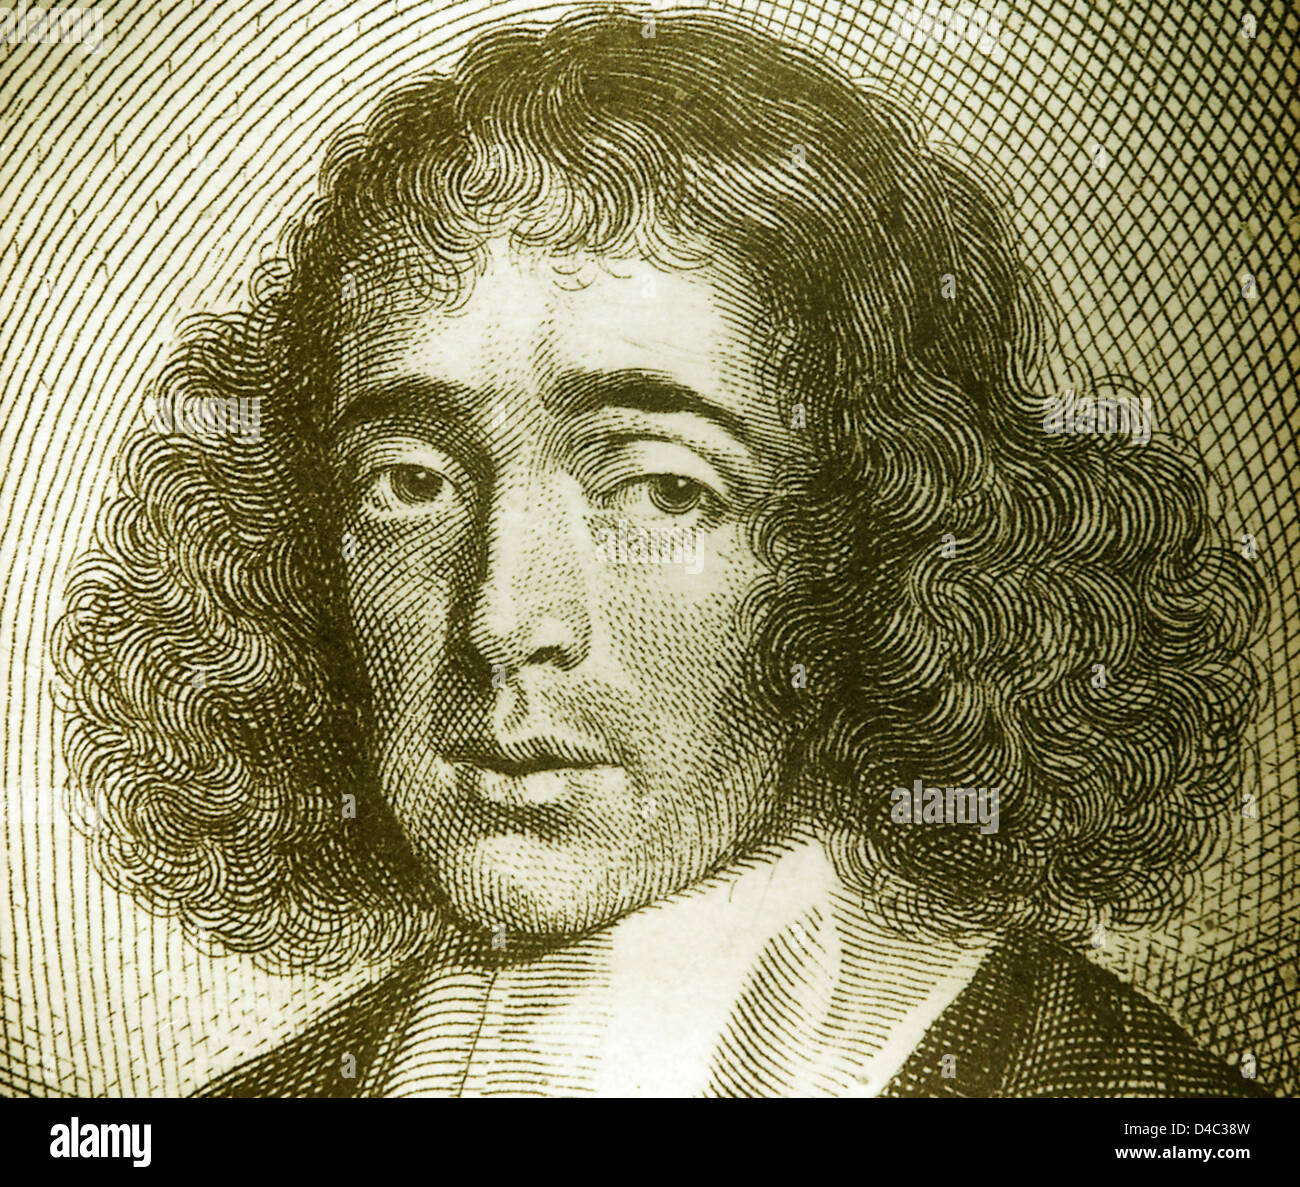 An engraving of Baruch Spinoza Stock Photo